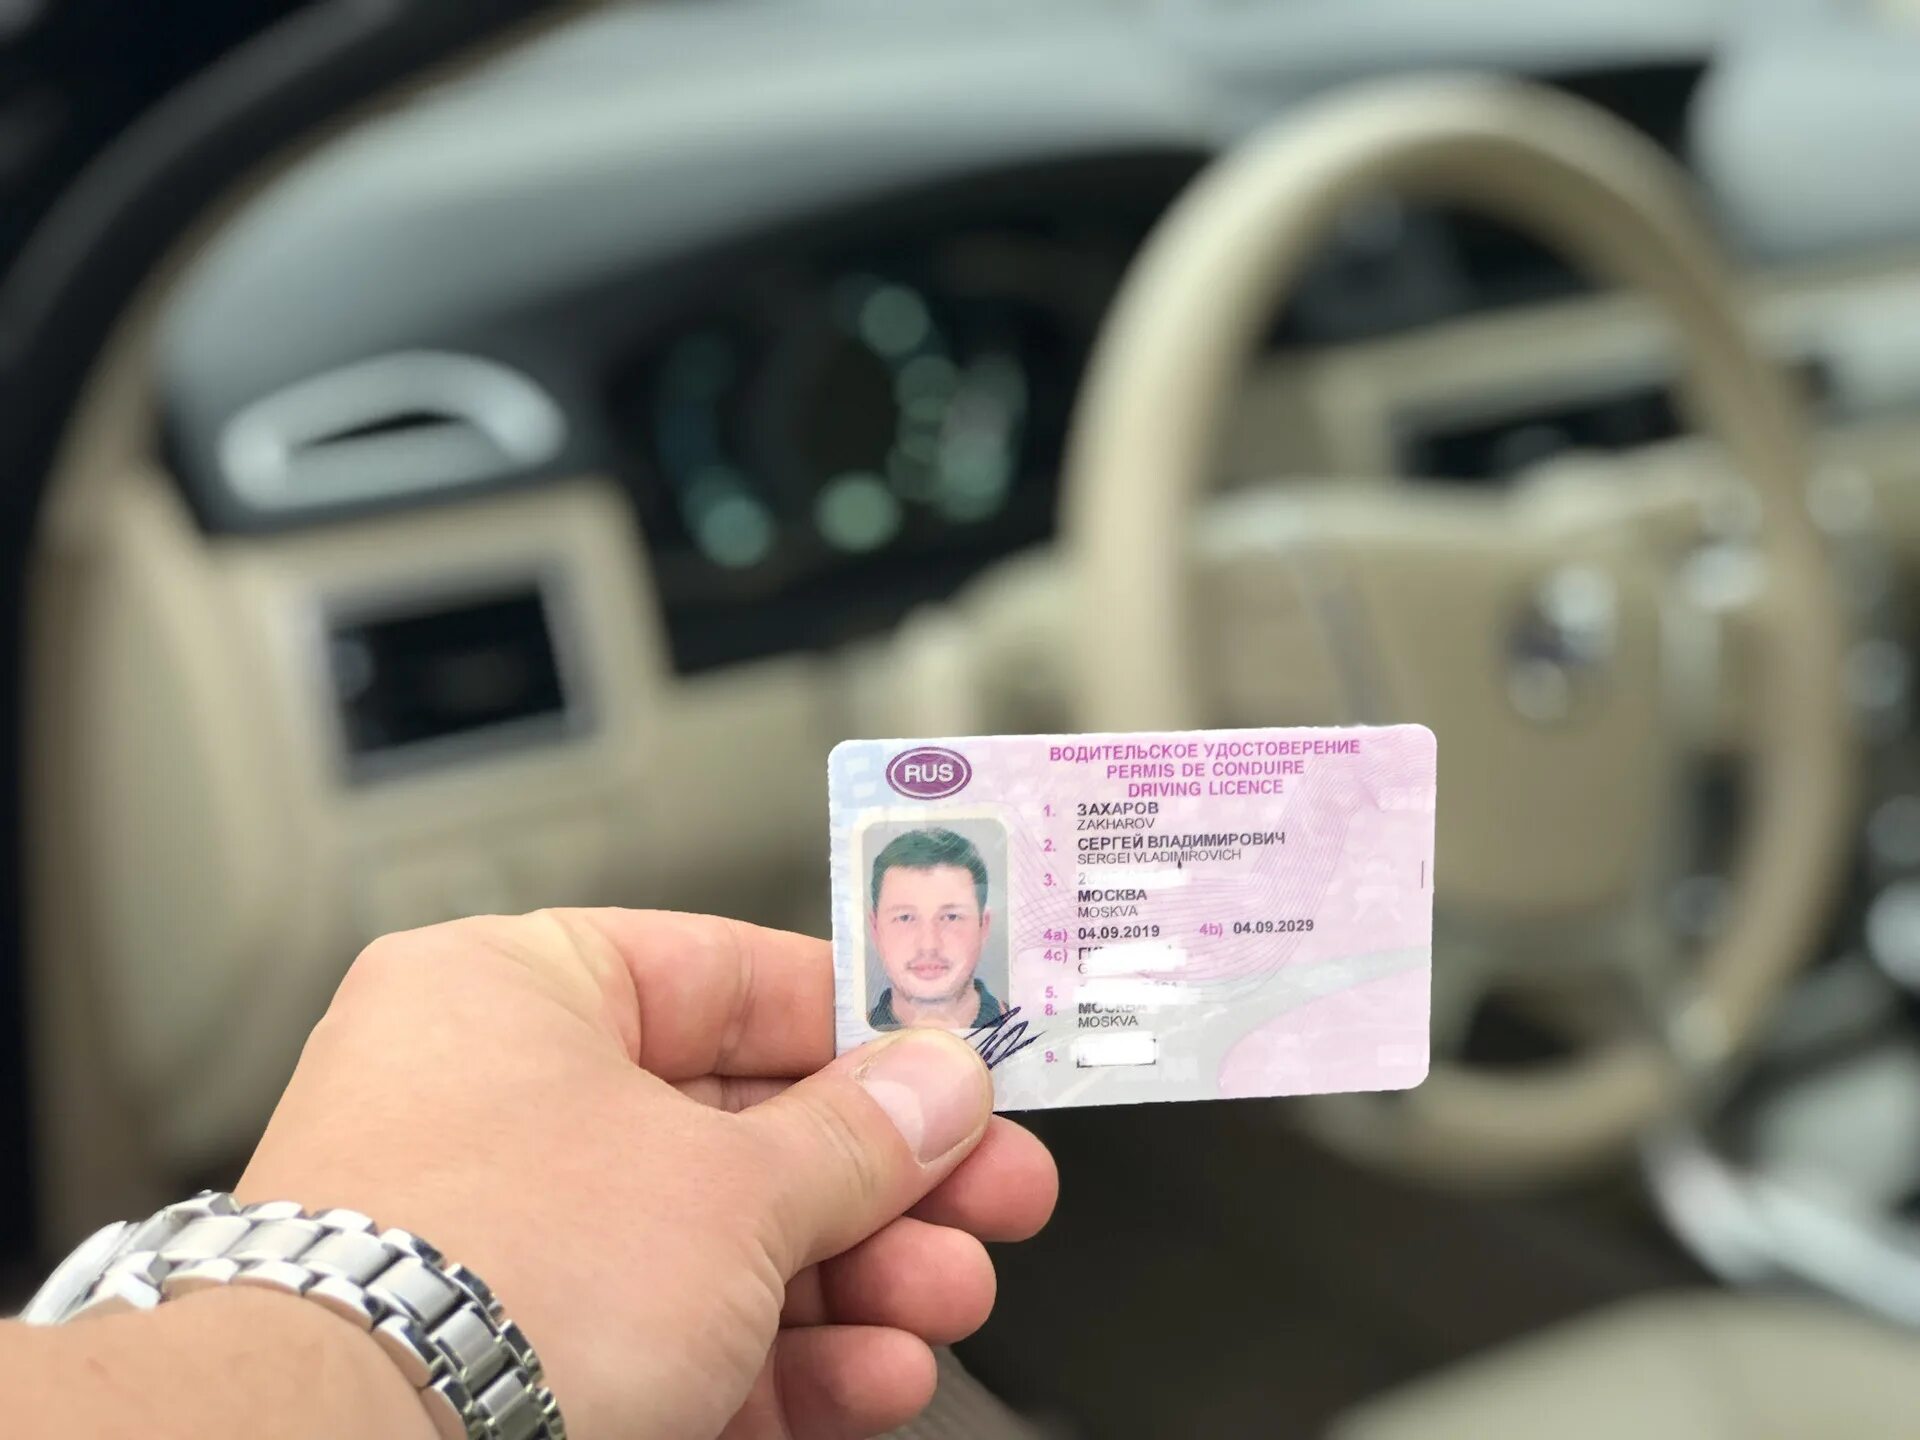 Управление автомобилем без водительского удостоверения